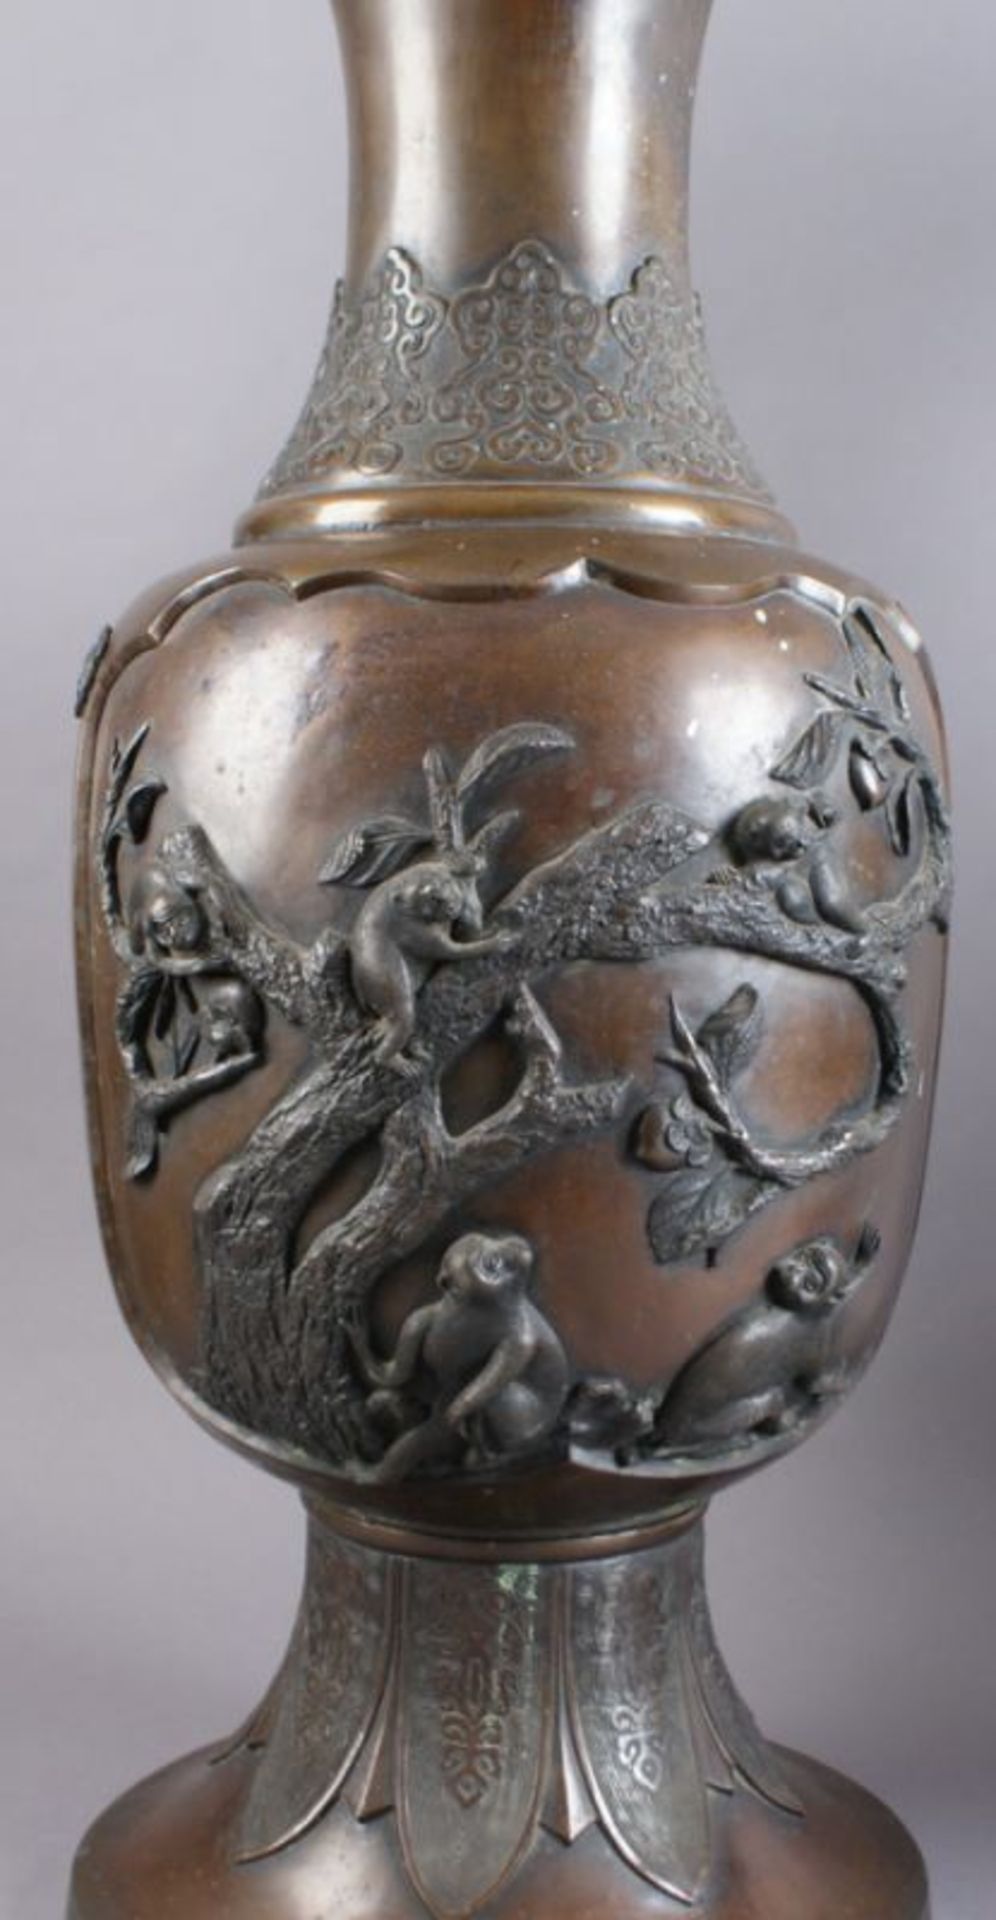 PAAR BRONZE VASEN Japan, 19. JH, zwei grosse Vasen mit Reliefdekor, Darstellung von spielenden Affen - Bild 6 aus 11